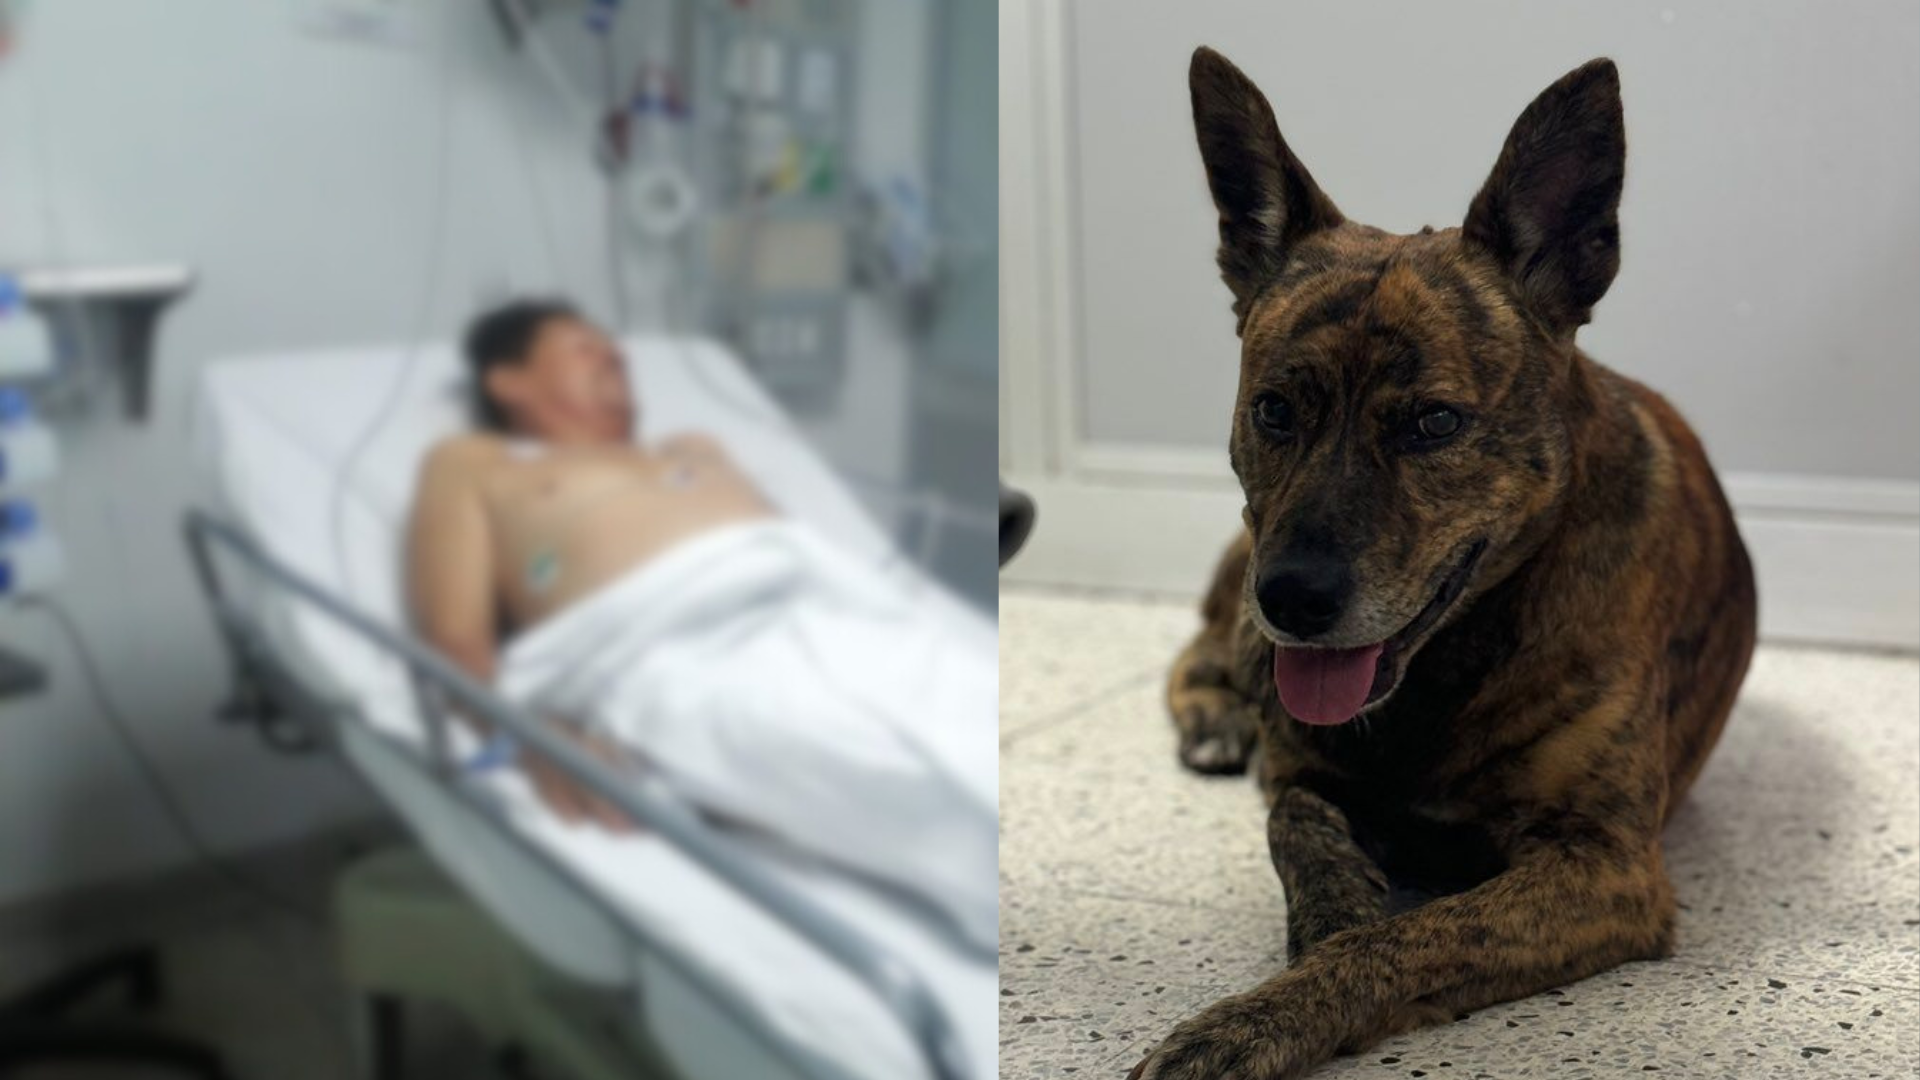 Como parte del proceso de mejora para muchos pacientes, las mascotas se convierten en una terapia para aliviar el dolor. Foto: Hospital General de Medellín